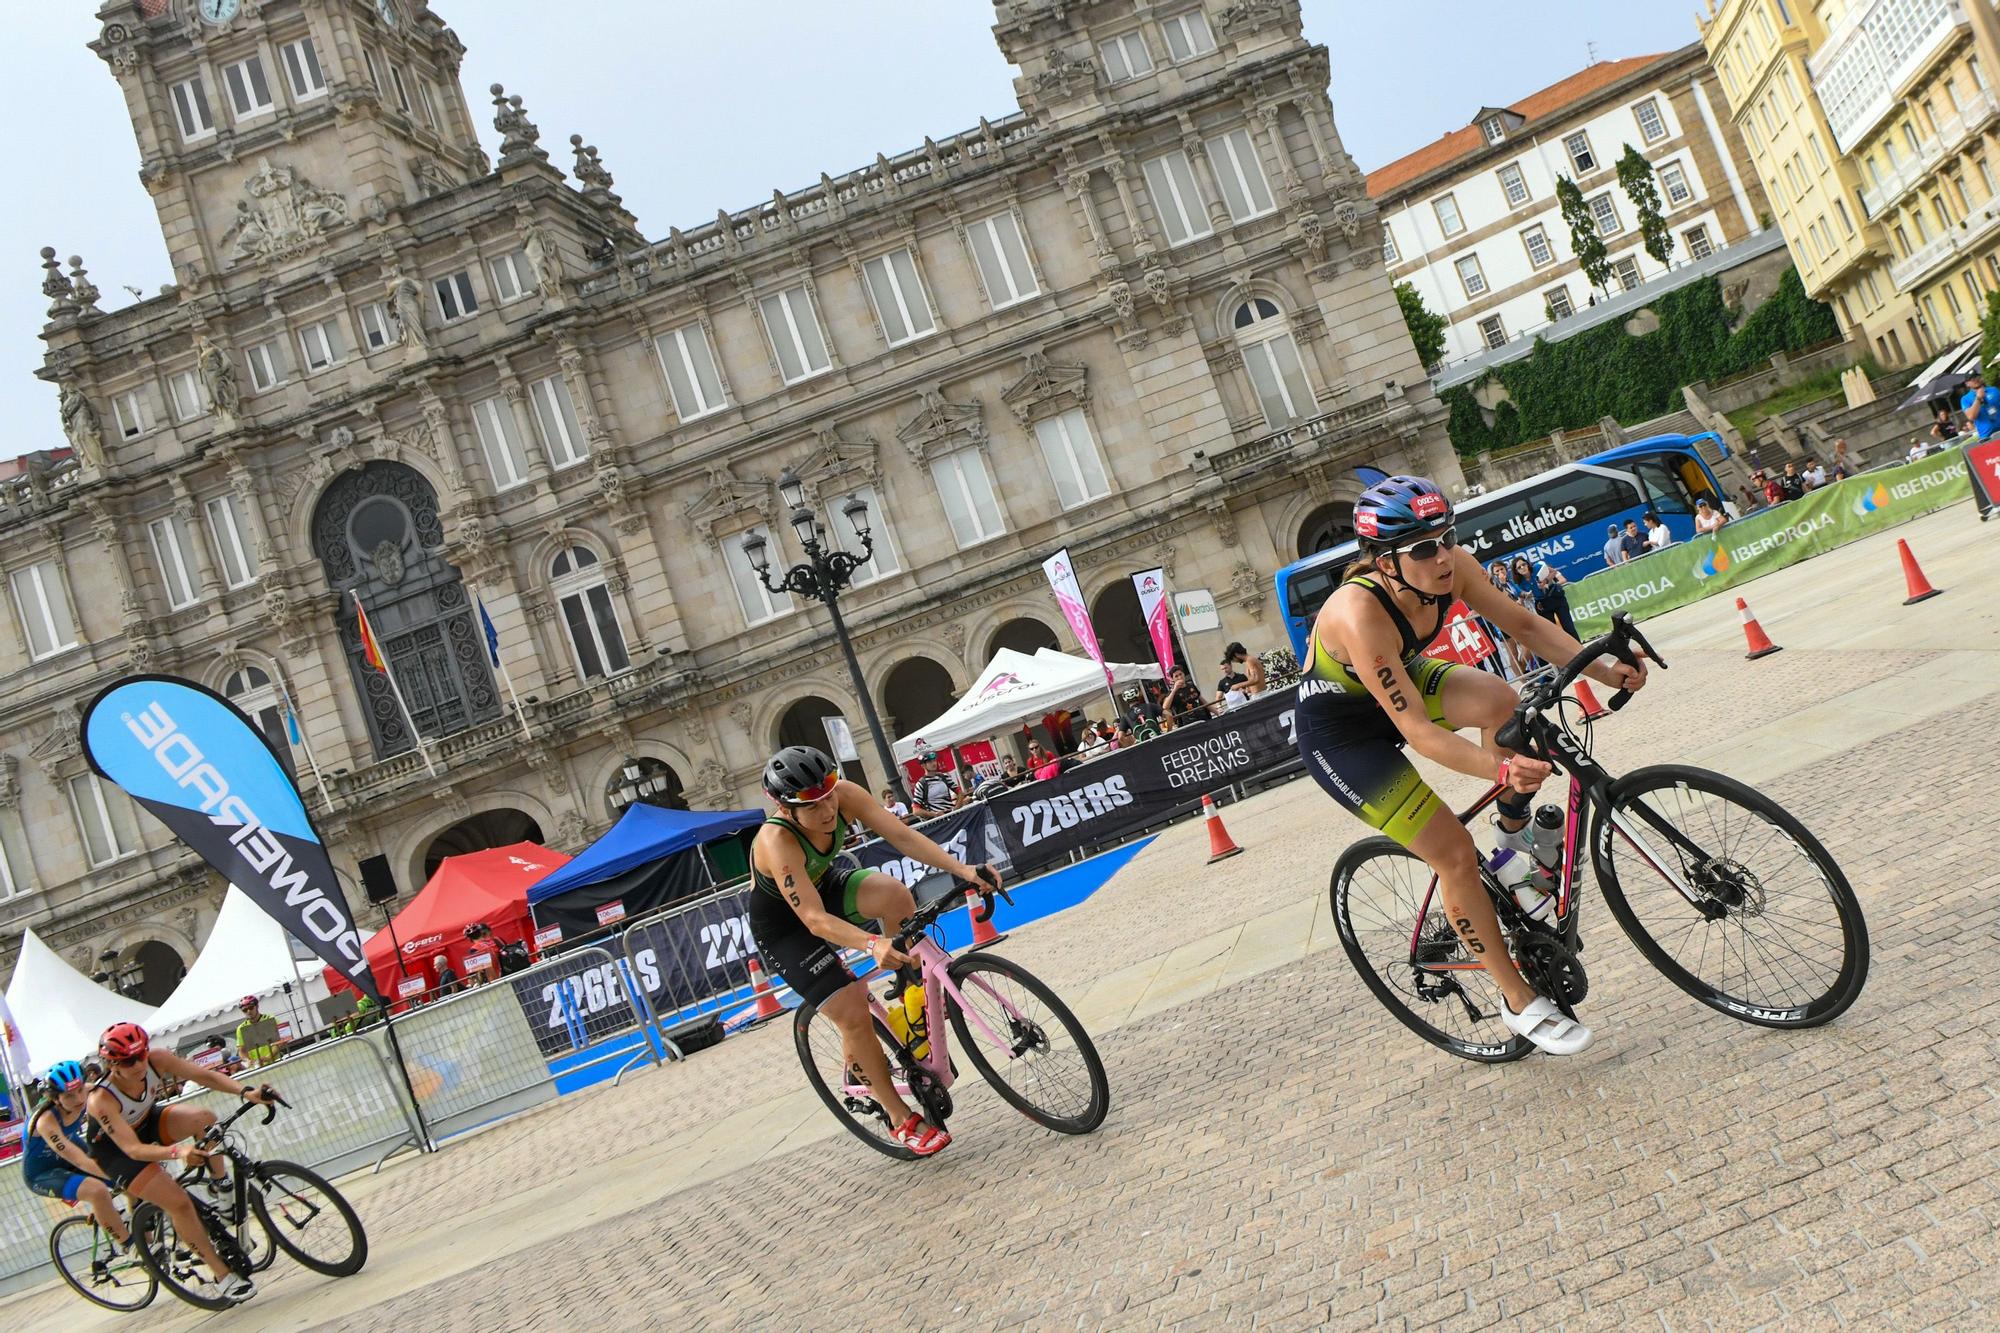 A Coruña, capital internacional del triatlón